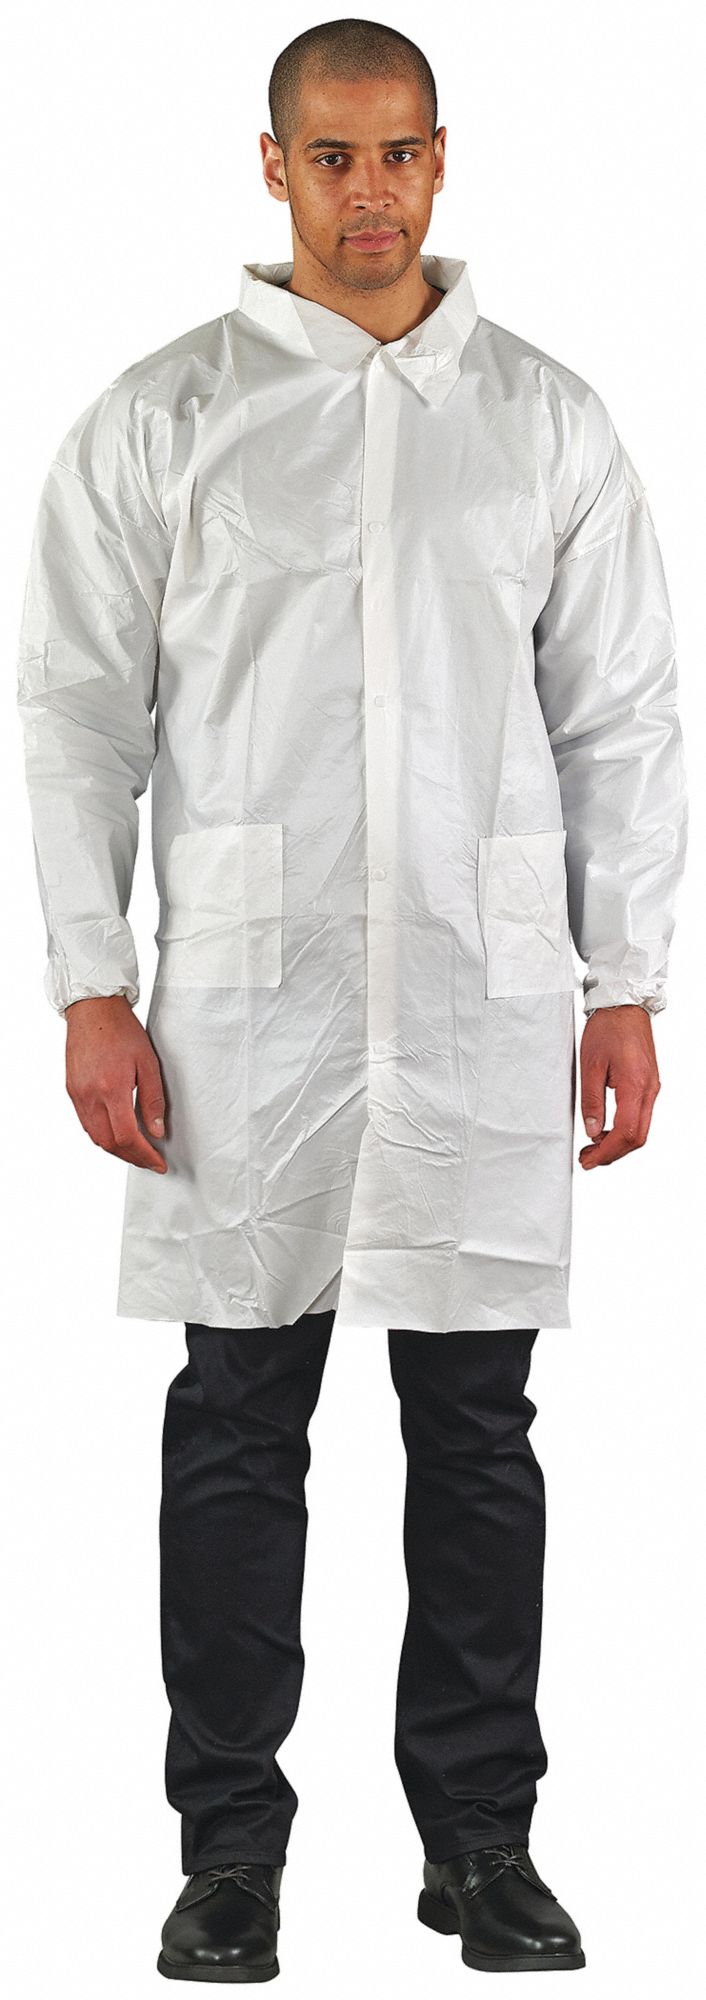 EDGE Disposable Lab Coat, 44